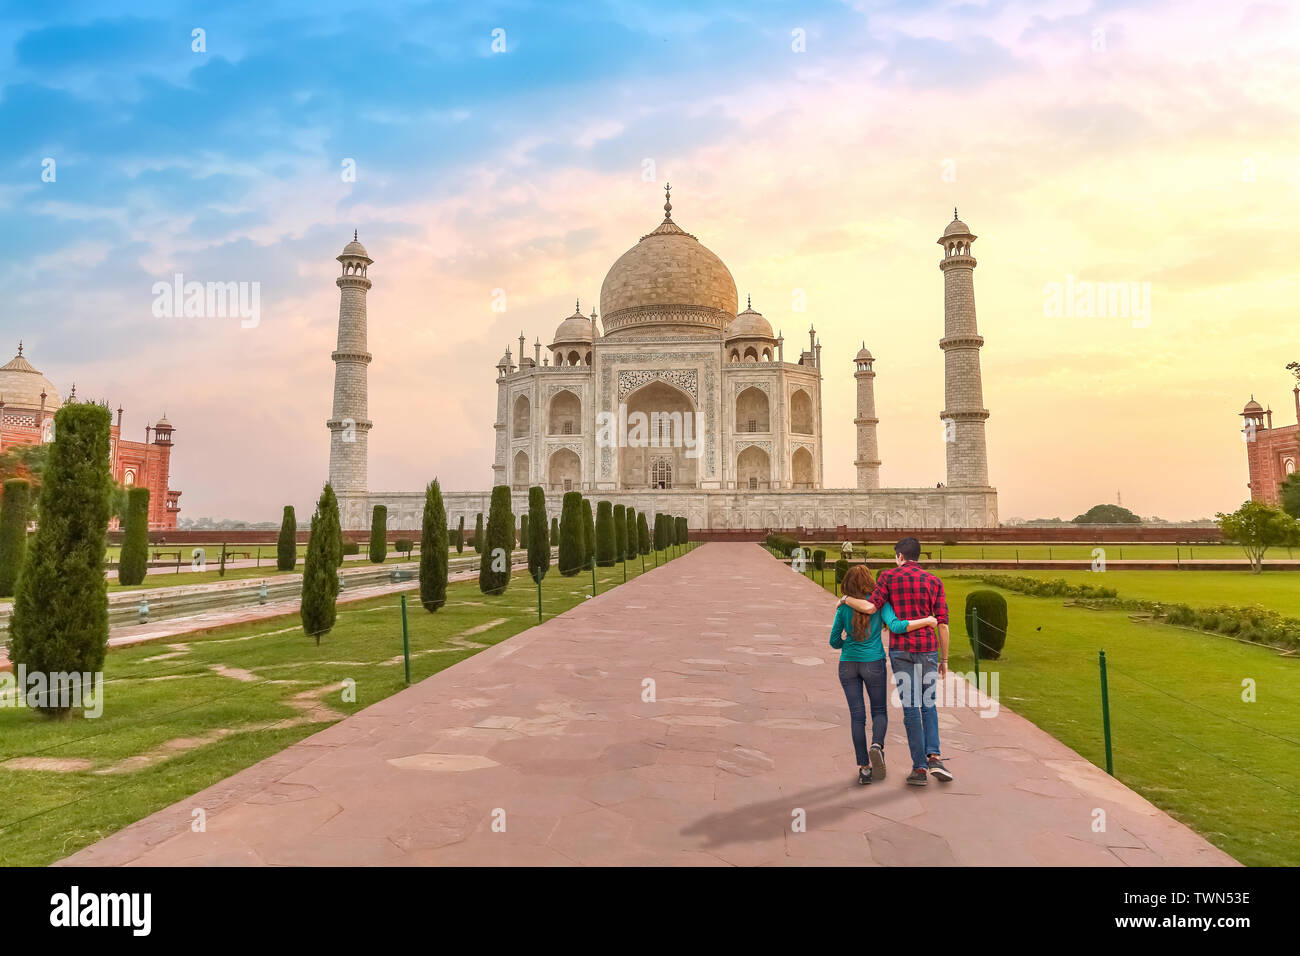 Couple de touristes au Taj Mahal Agra Inde au lever du soleil. Taj Mahal est un chef-d'architecture moghole, désigné comme site du patrimoine mondial de l'UNESCO Banque D'Images